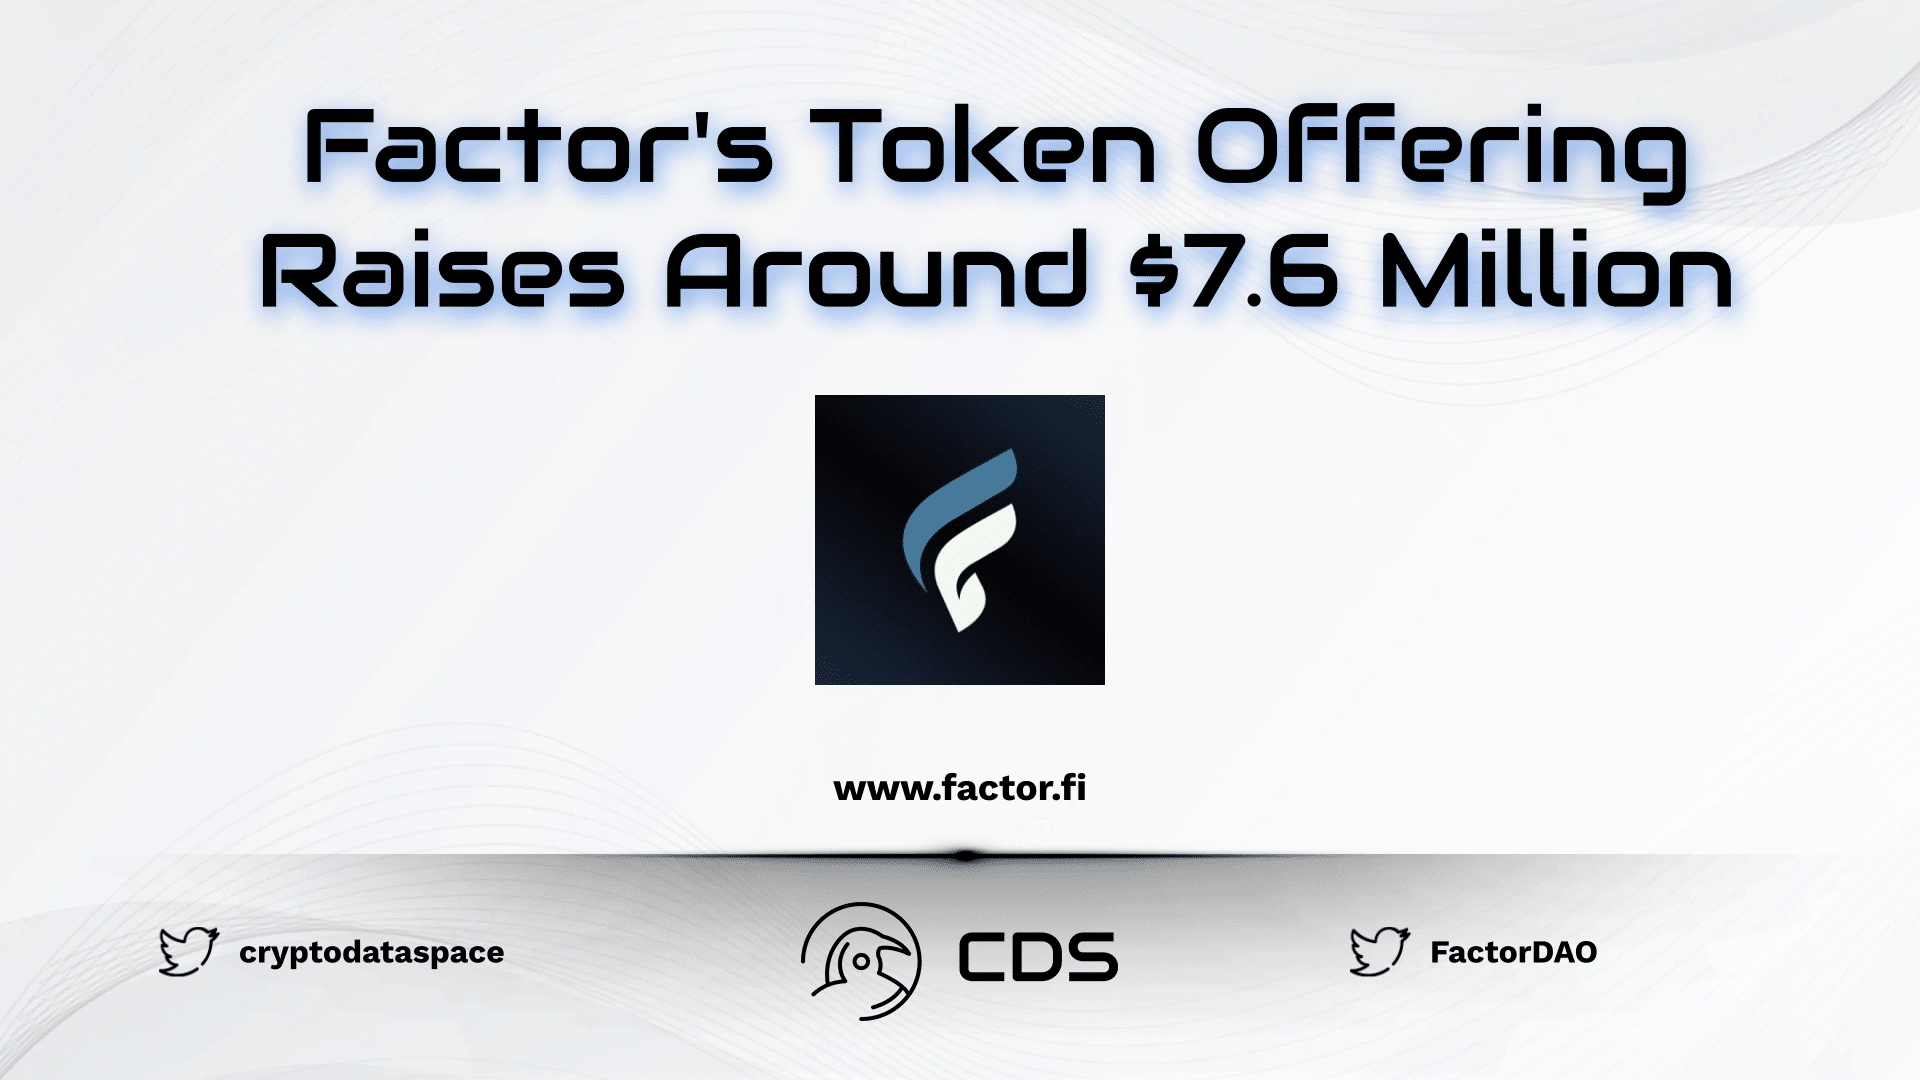 Factor's Token Offering Raises Around $7.6 Million